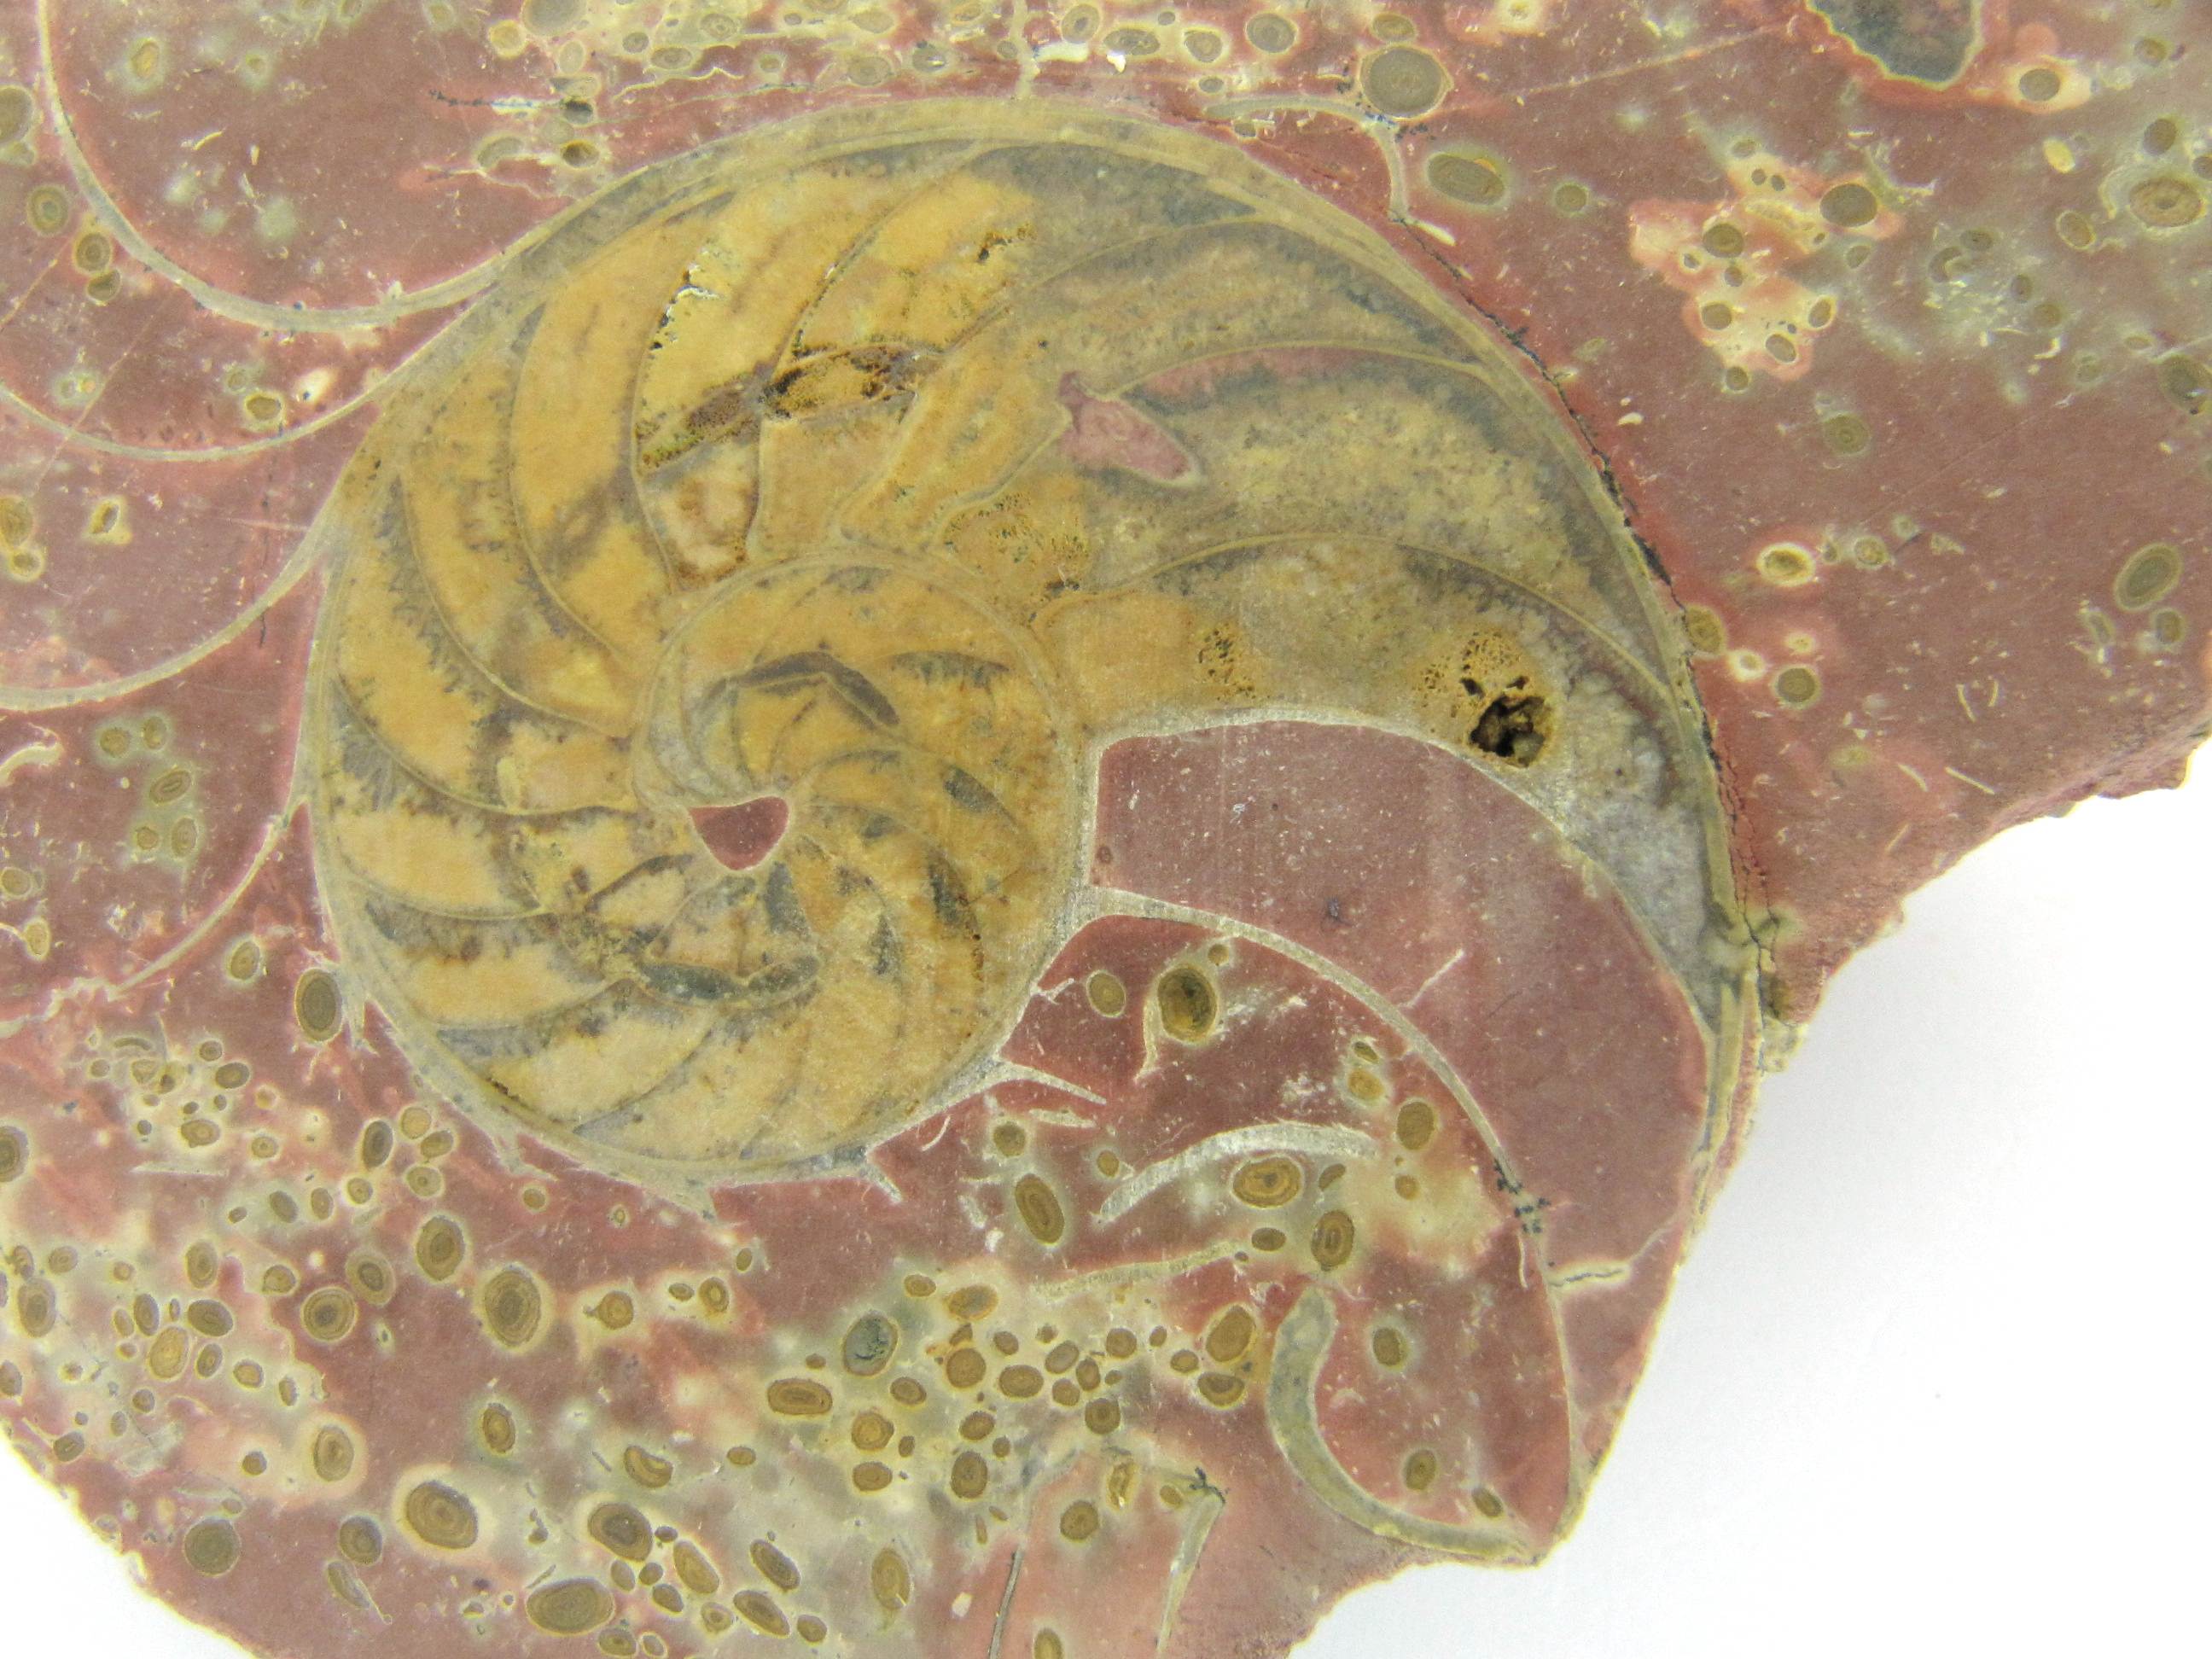 Cenoceras Nautile fossile   Saint Germain sur l'Arbresle 